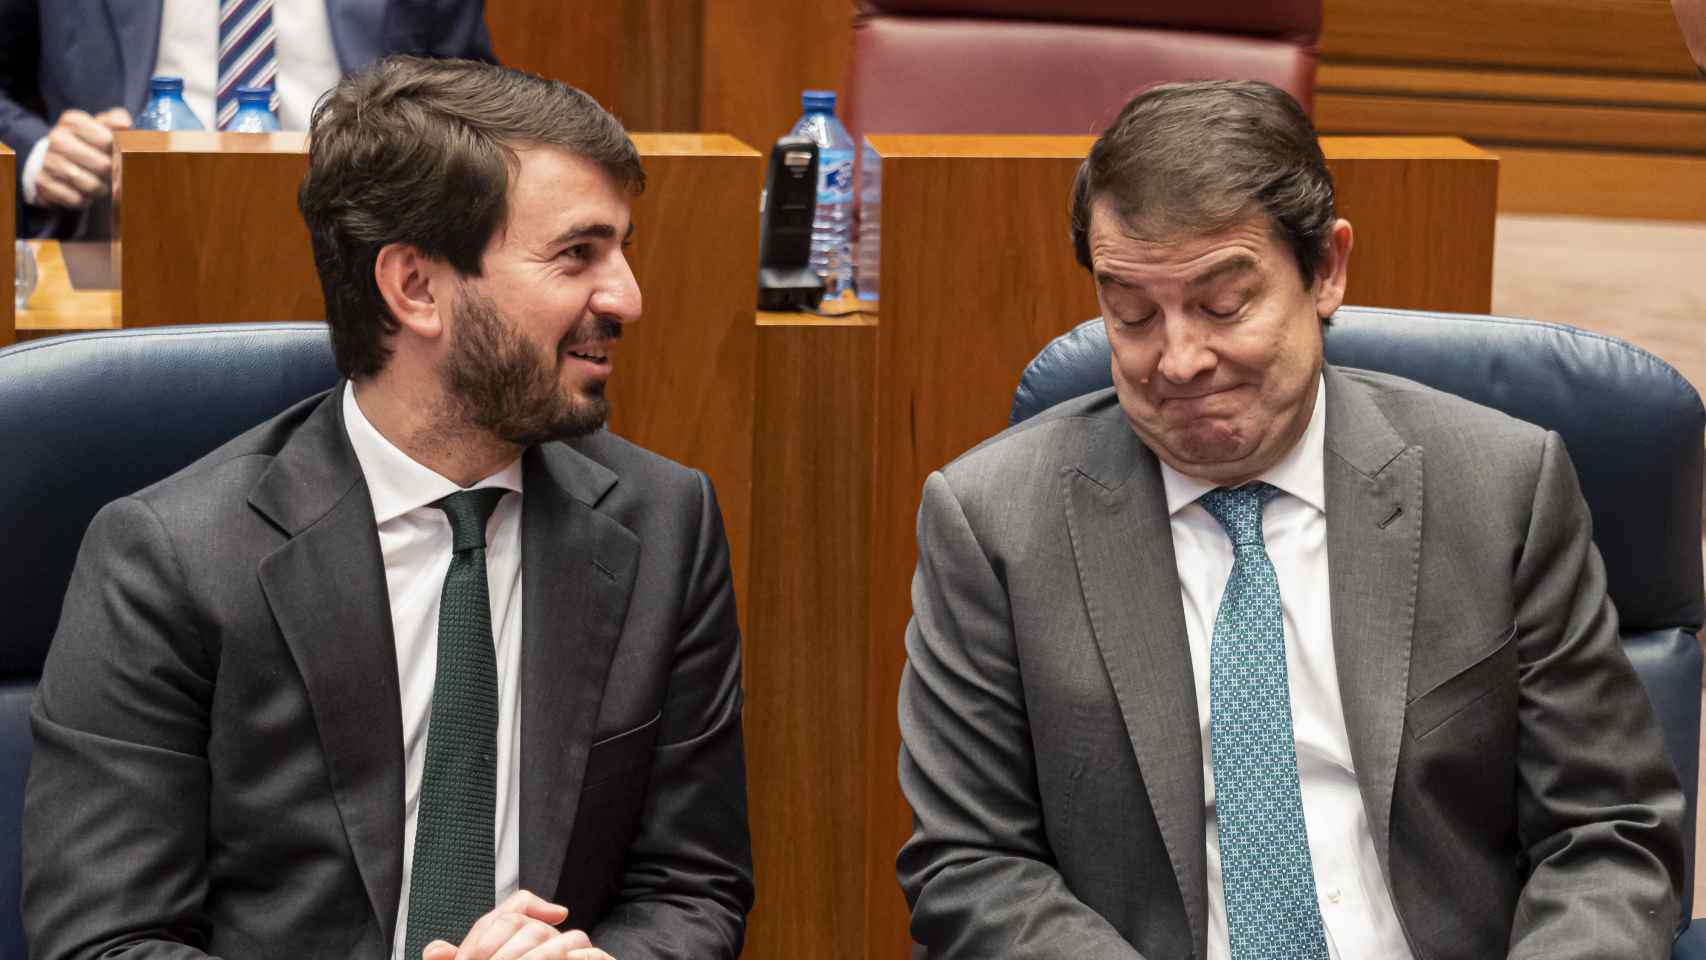 Juan García-Gallardo y Mañueco en una imagen reciente en el Parlamento de Castilla y León.